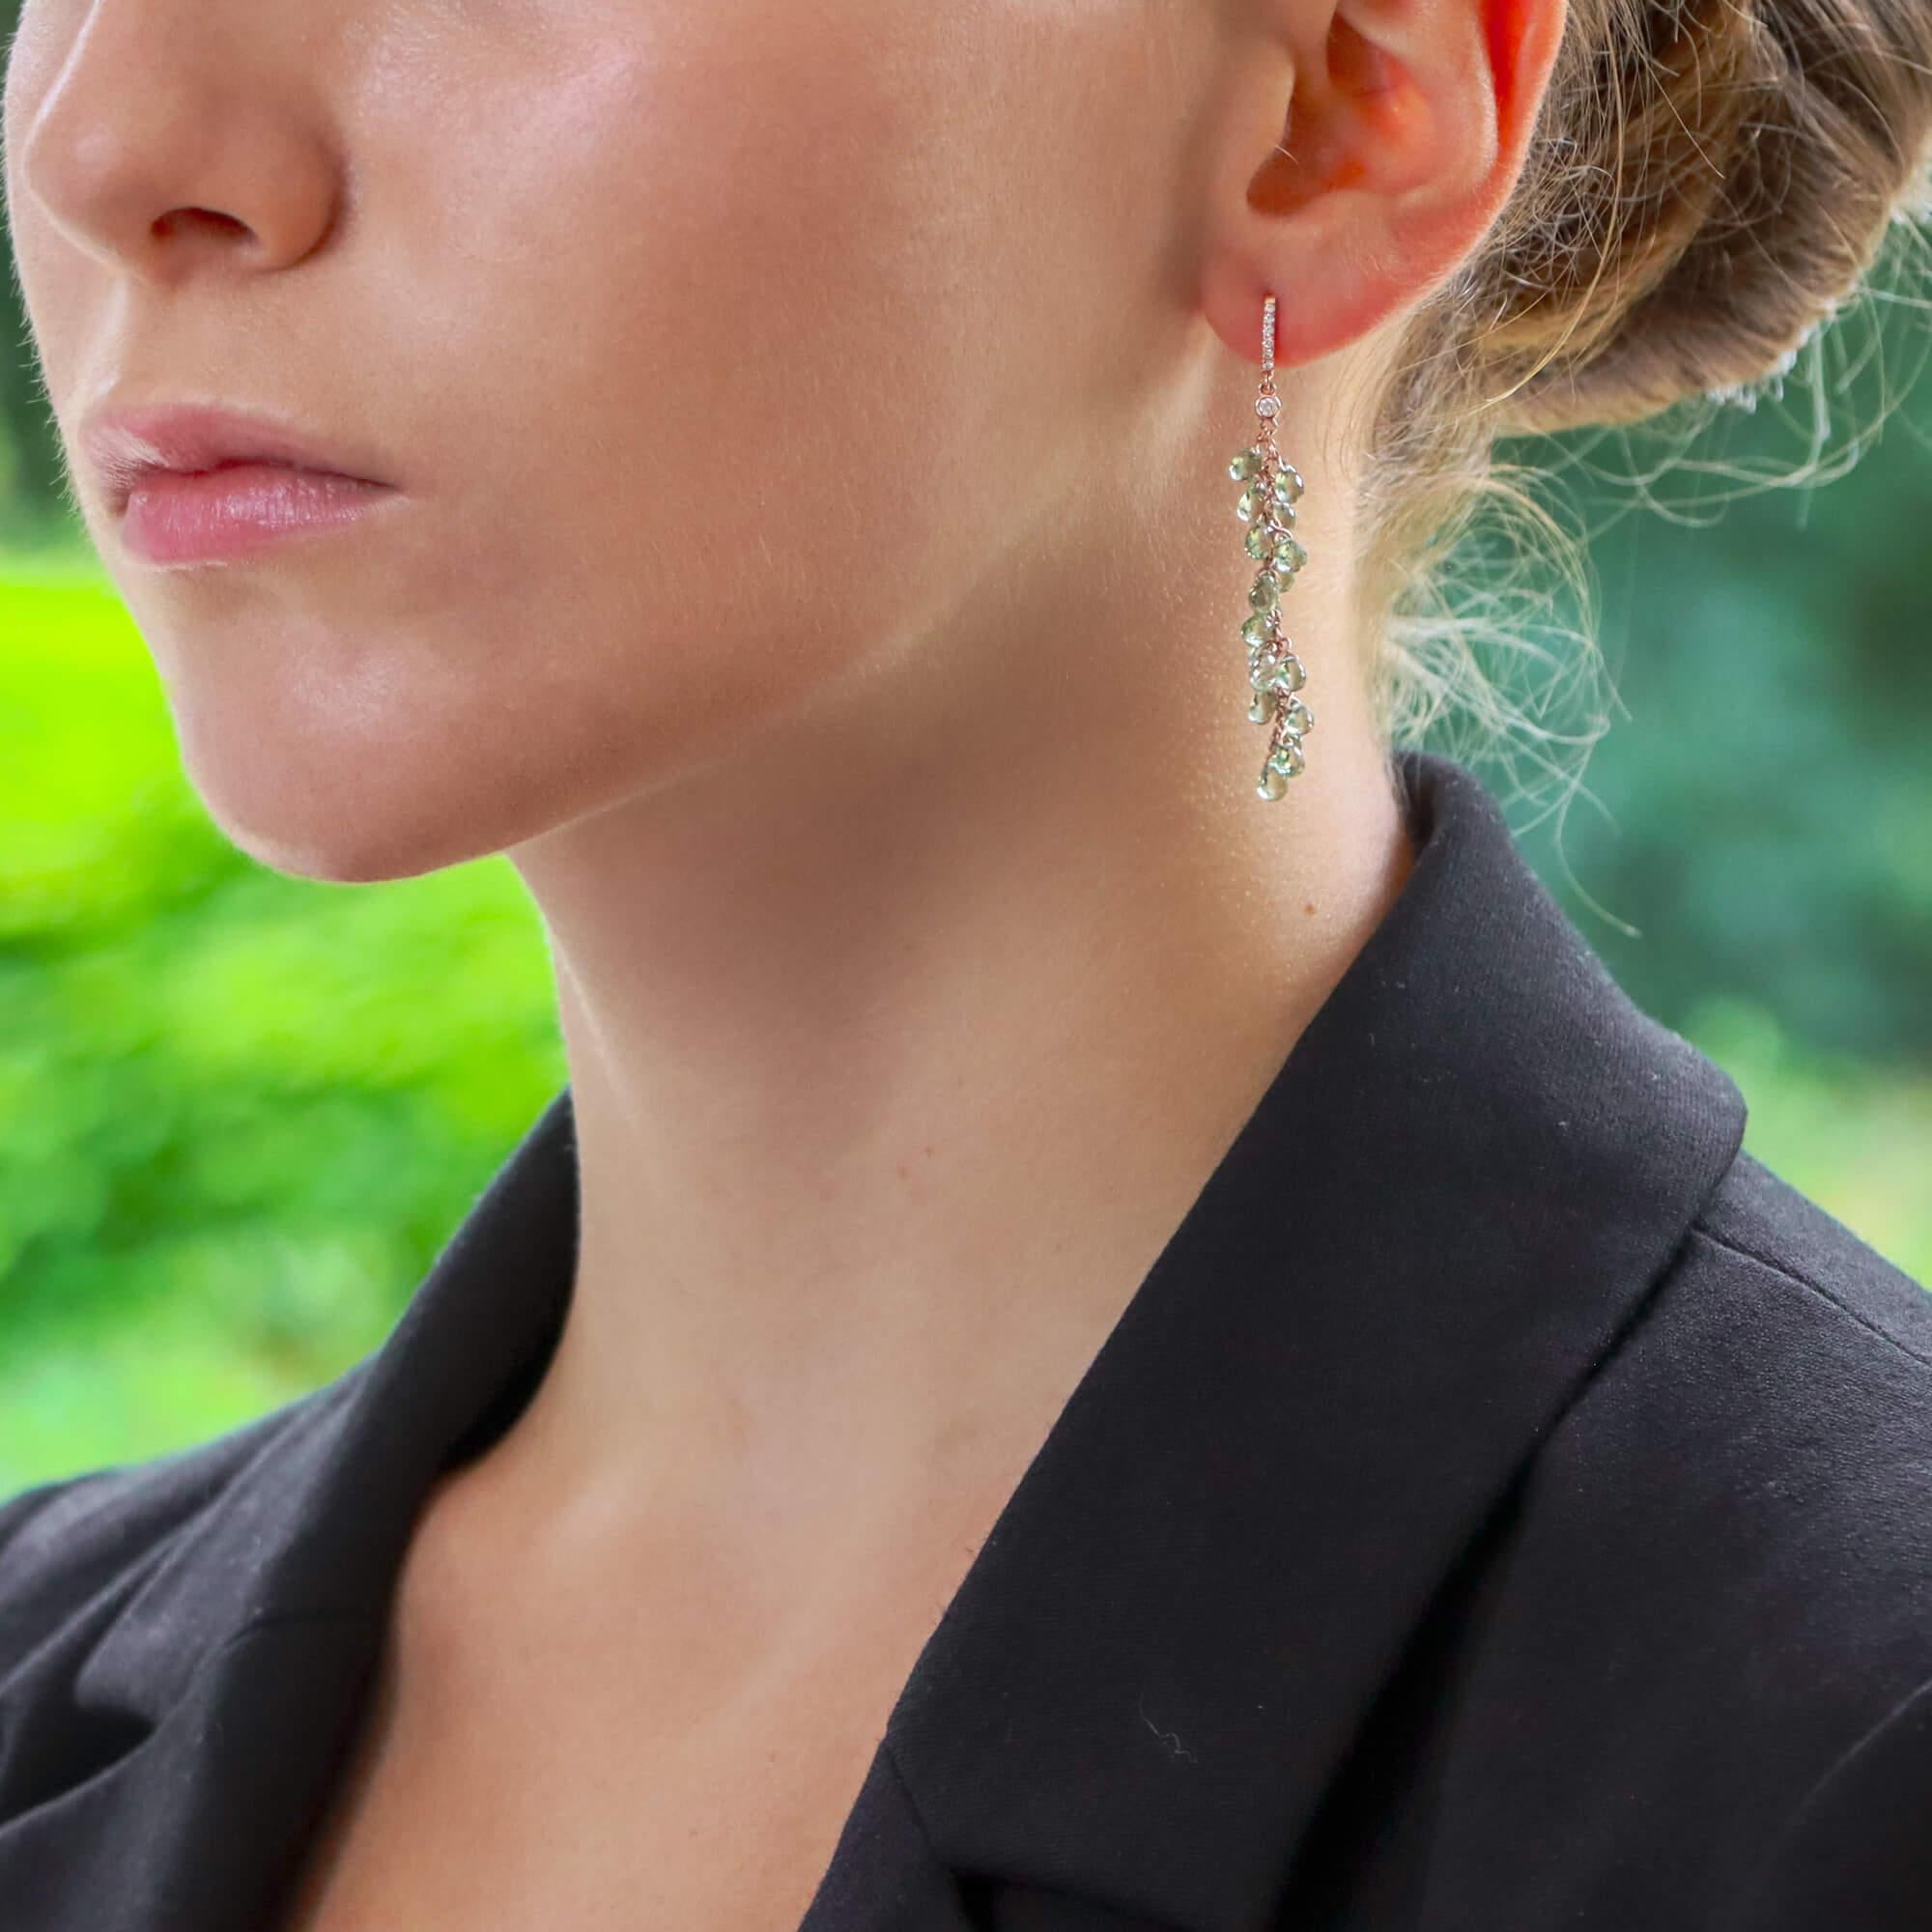  Ein hübsches Paar Diamant- und Briolette-Saphir-Ohrringe aus 18 Karat Roségold.

Jeder Ohrring ist wunderschön gearbeitet und verfügt zunächst über einen zierlichen, mit Pflastersteinen besetzten halben Diamantring. An diesem Reif hängt ein mit